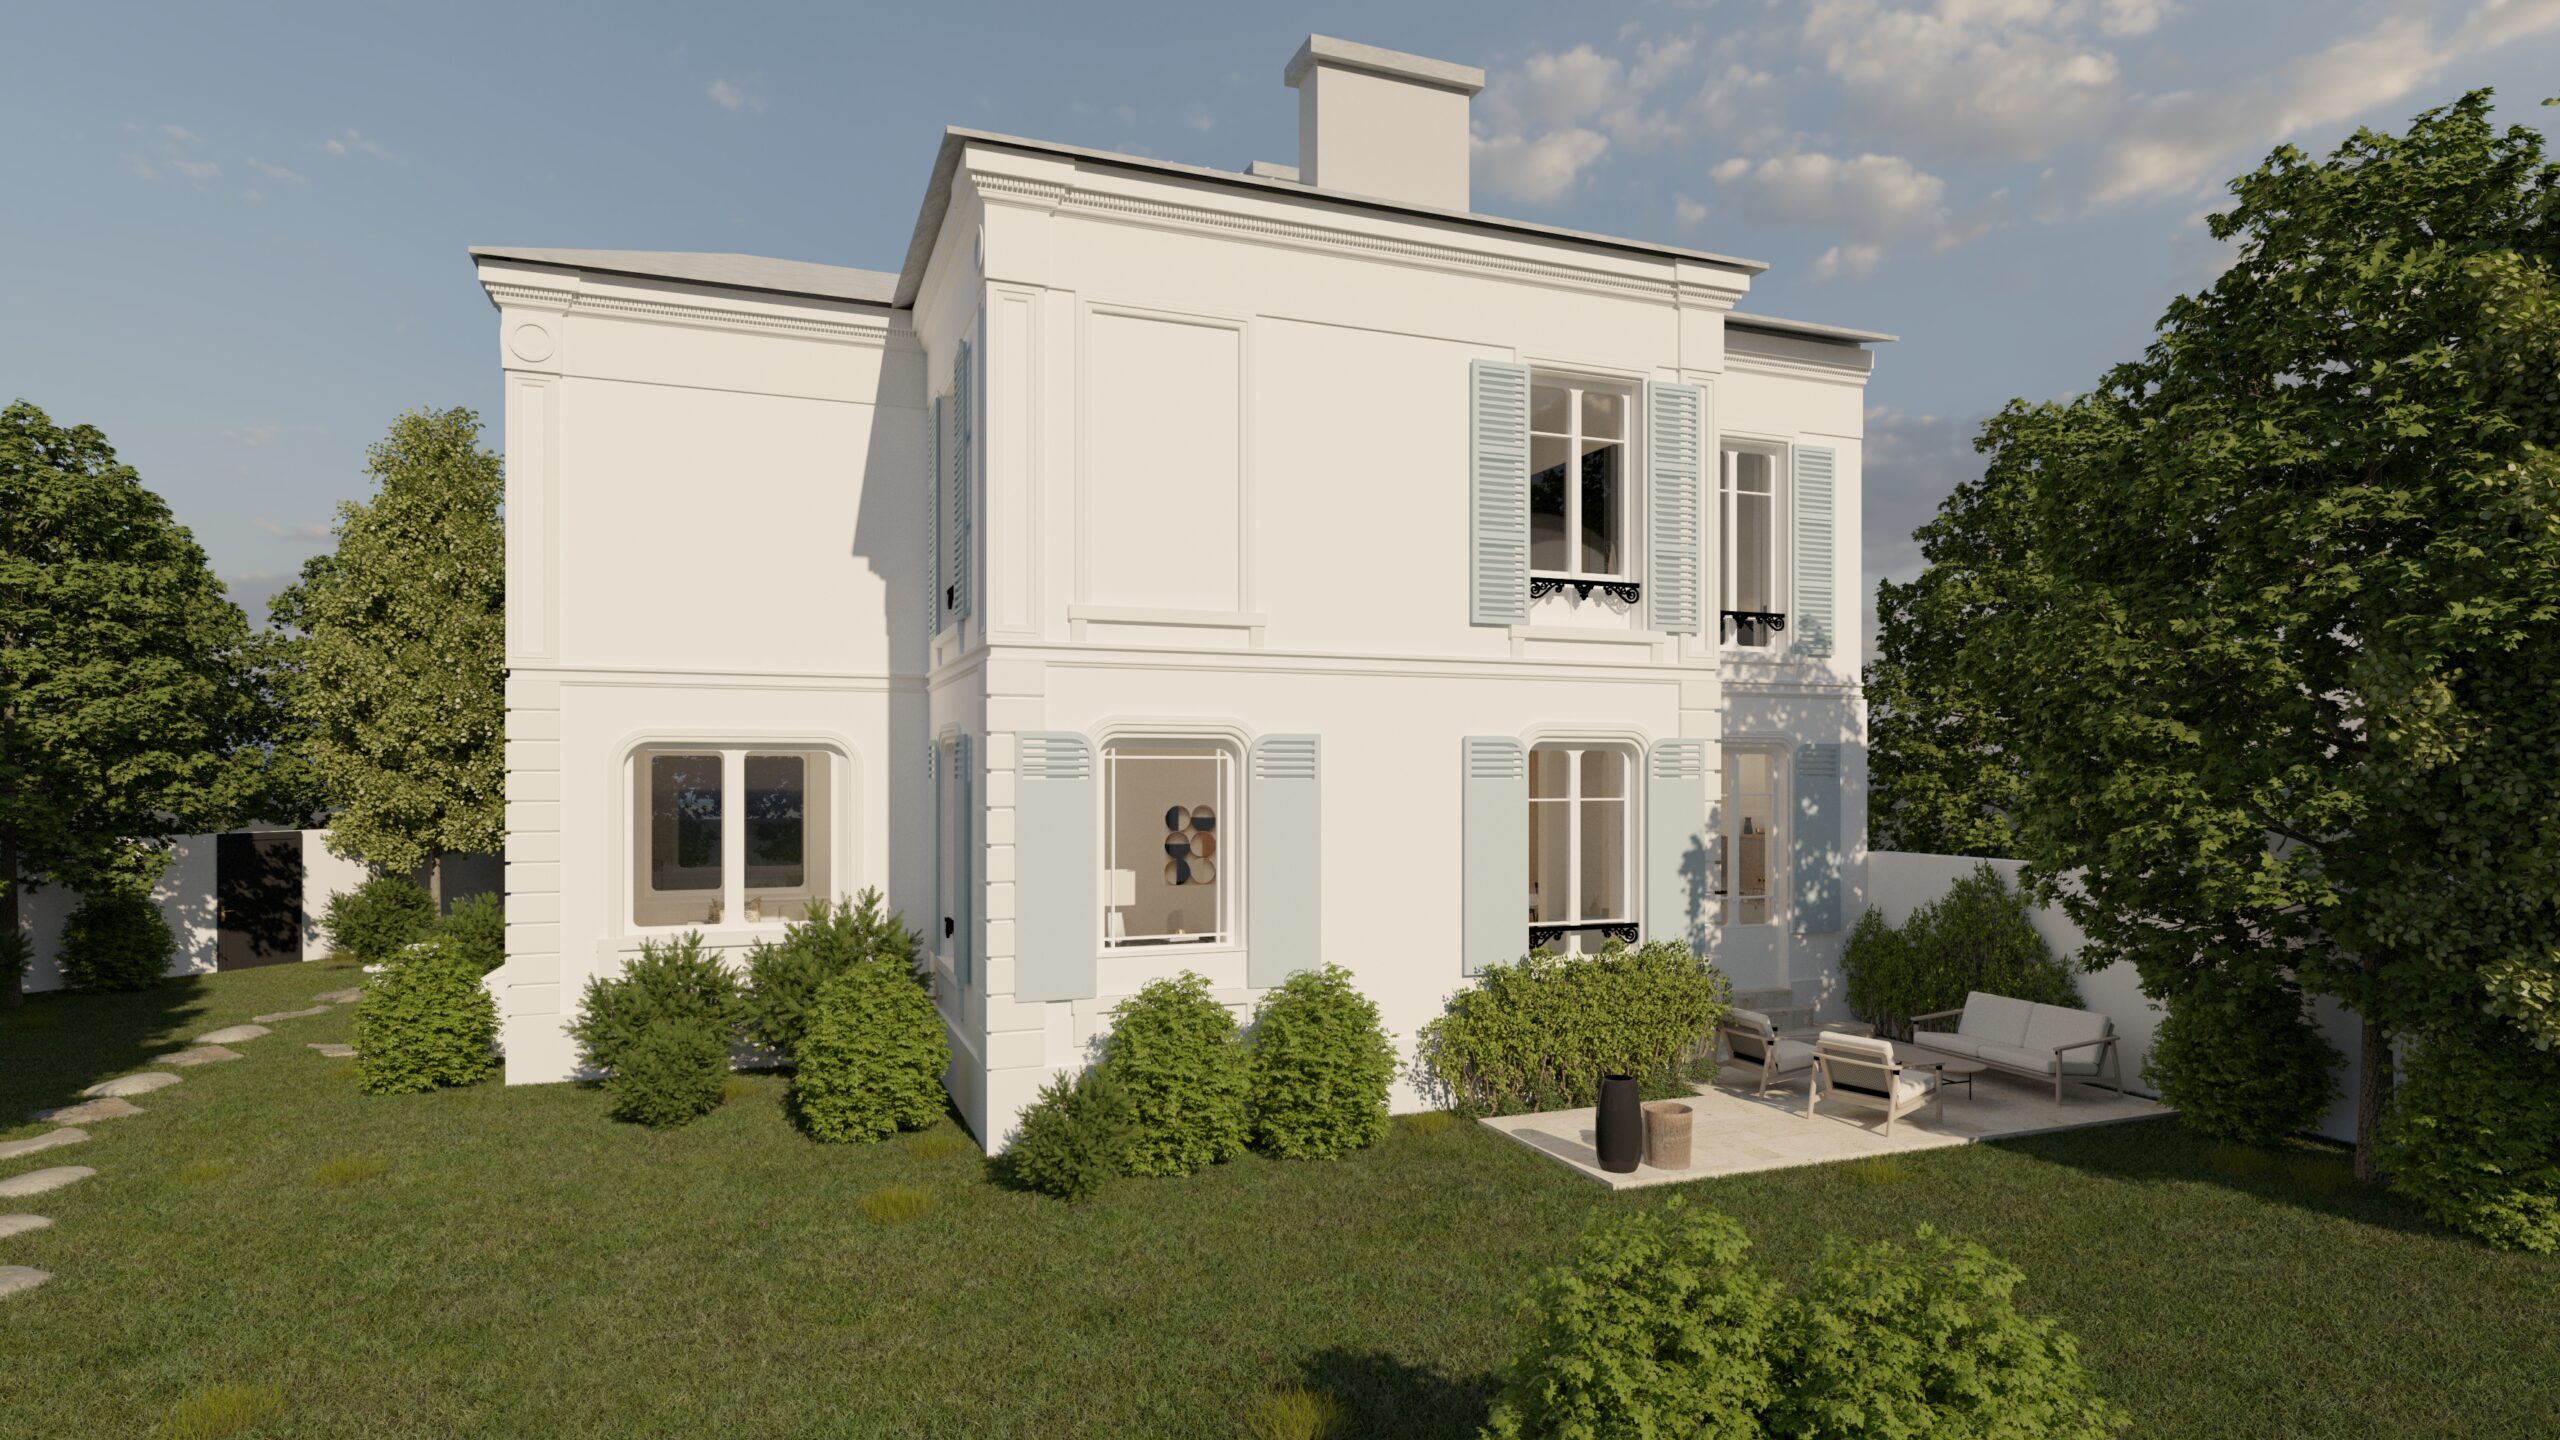 Façade extérieur de la maison. La façade est blanche et les volets sont bleus pastel. La maison est entourée par beaucoup de végétations, et un salon d'été a été installé sur la terrasse.